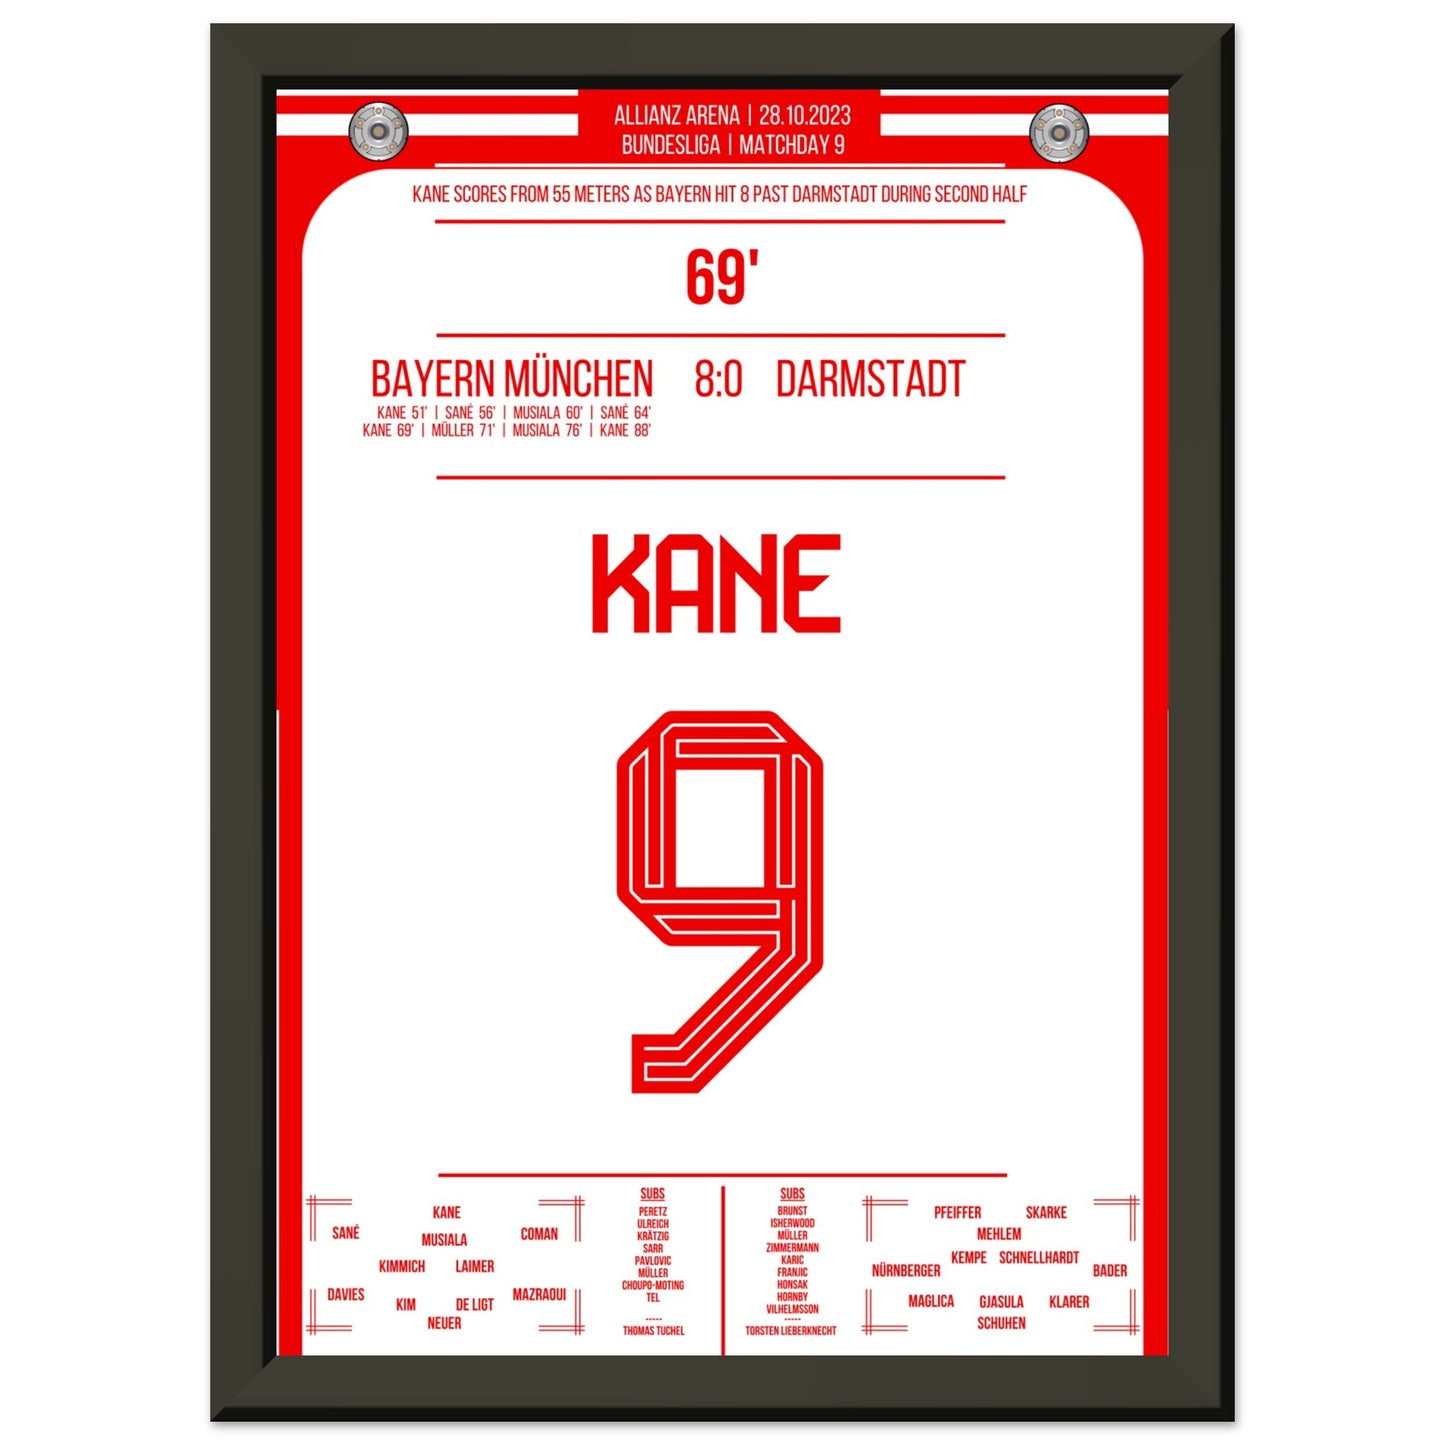 Kane's Traumtor aus 55 Metern bei 8-0 Sieg gegen Darmstadt